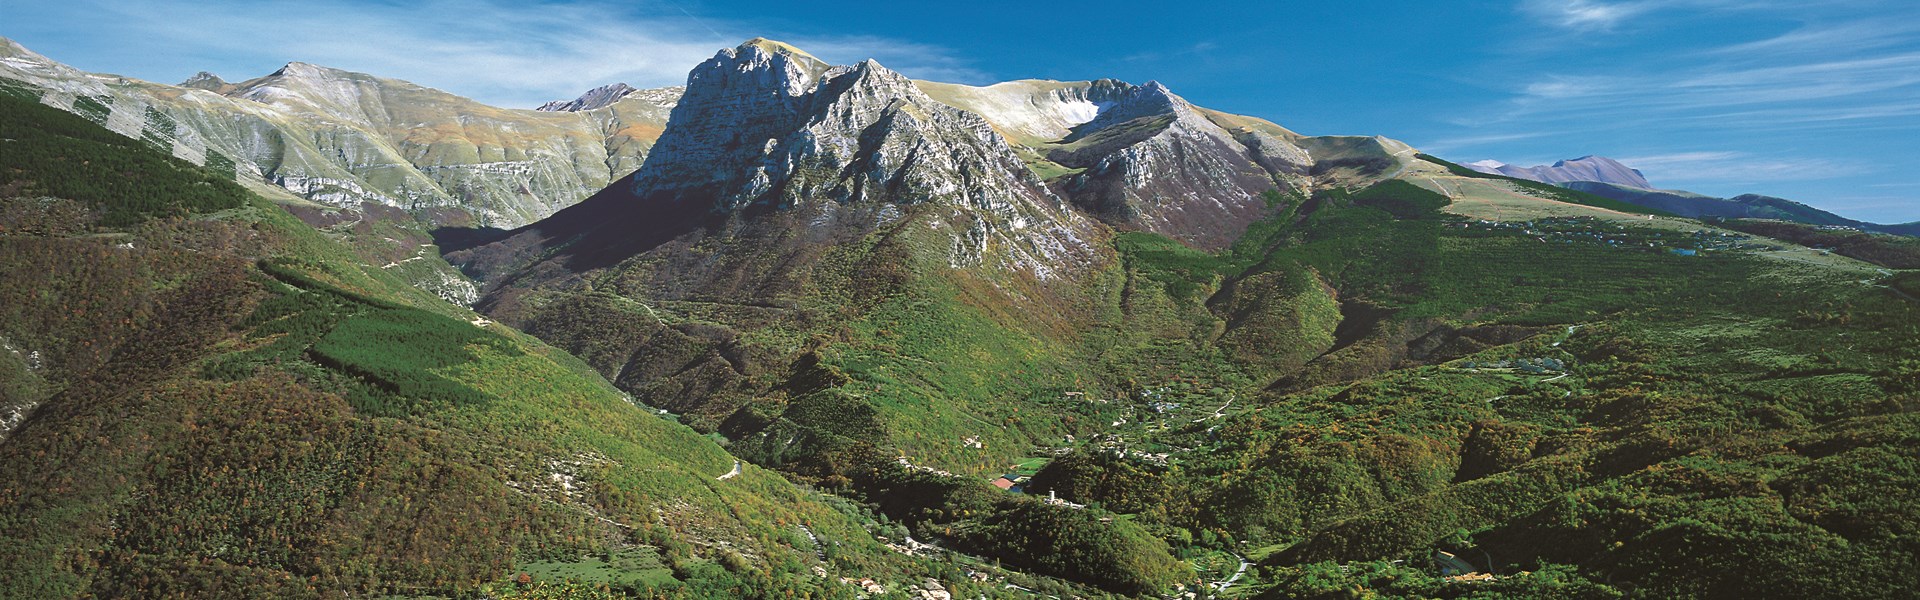 Ussita - Fontignano - Monte Bove